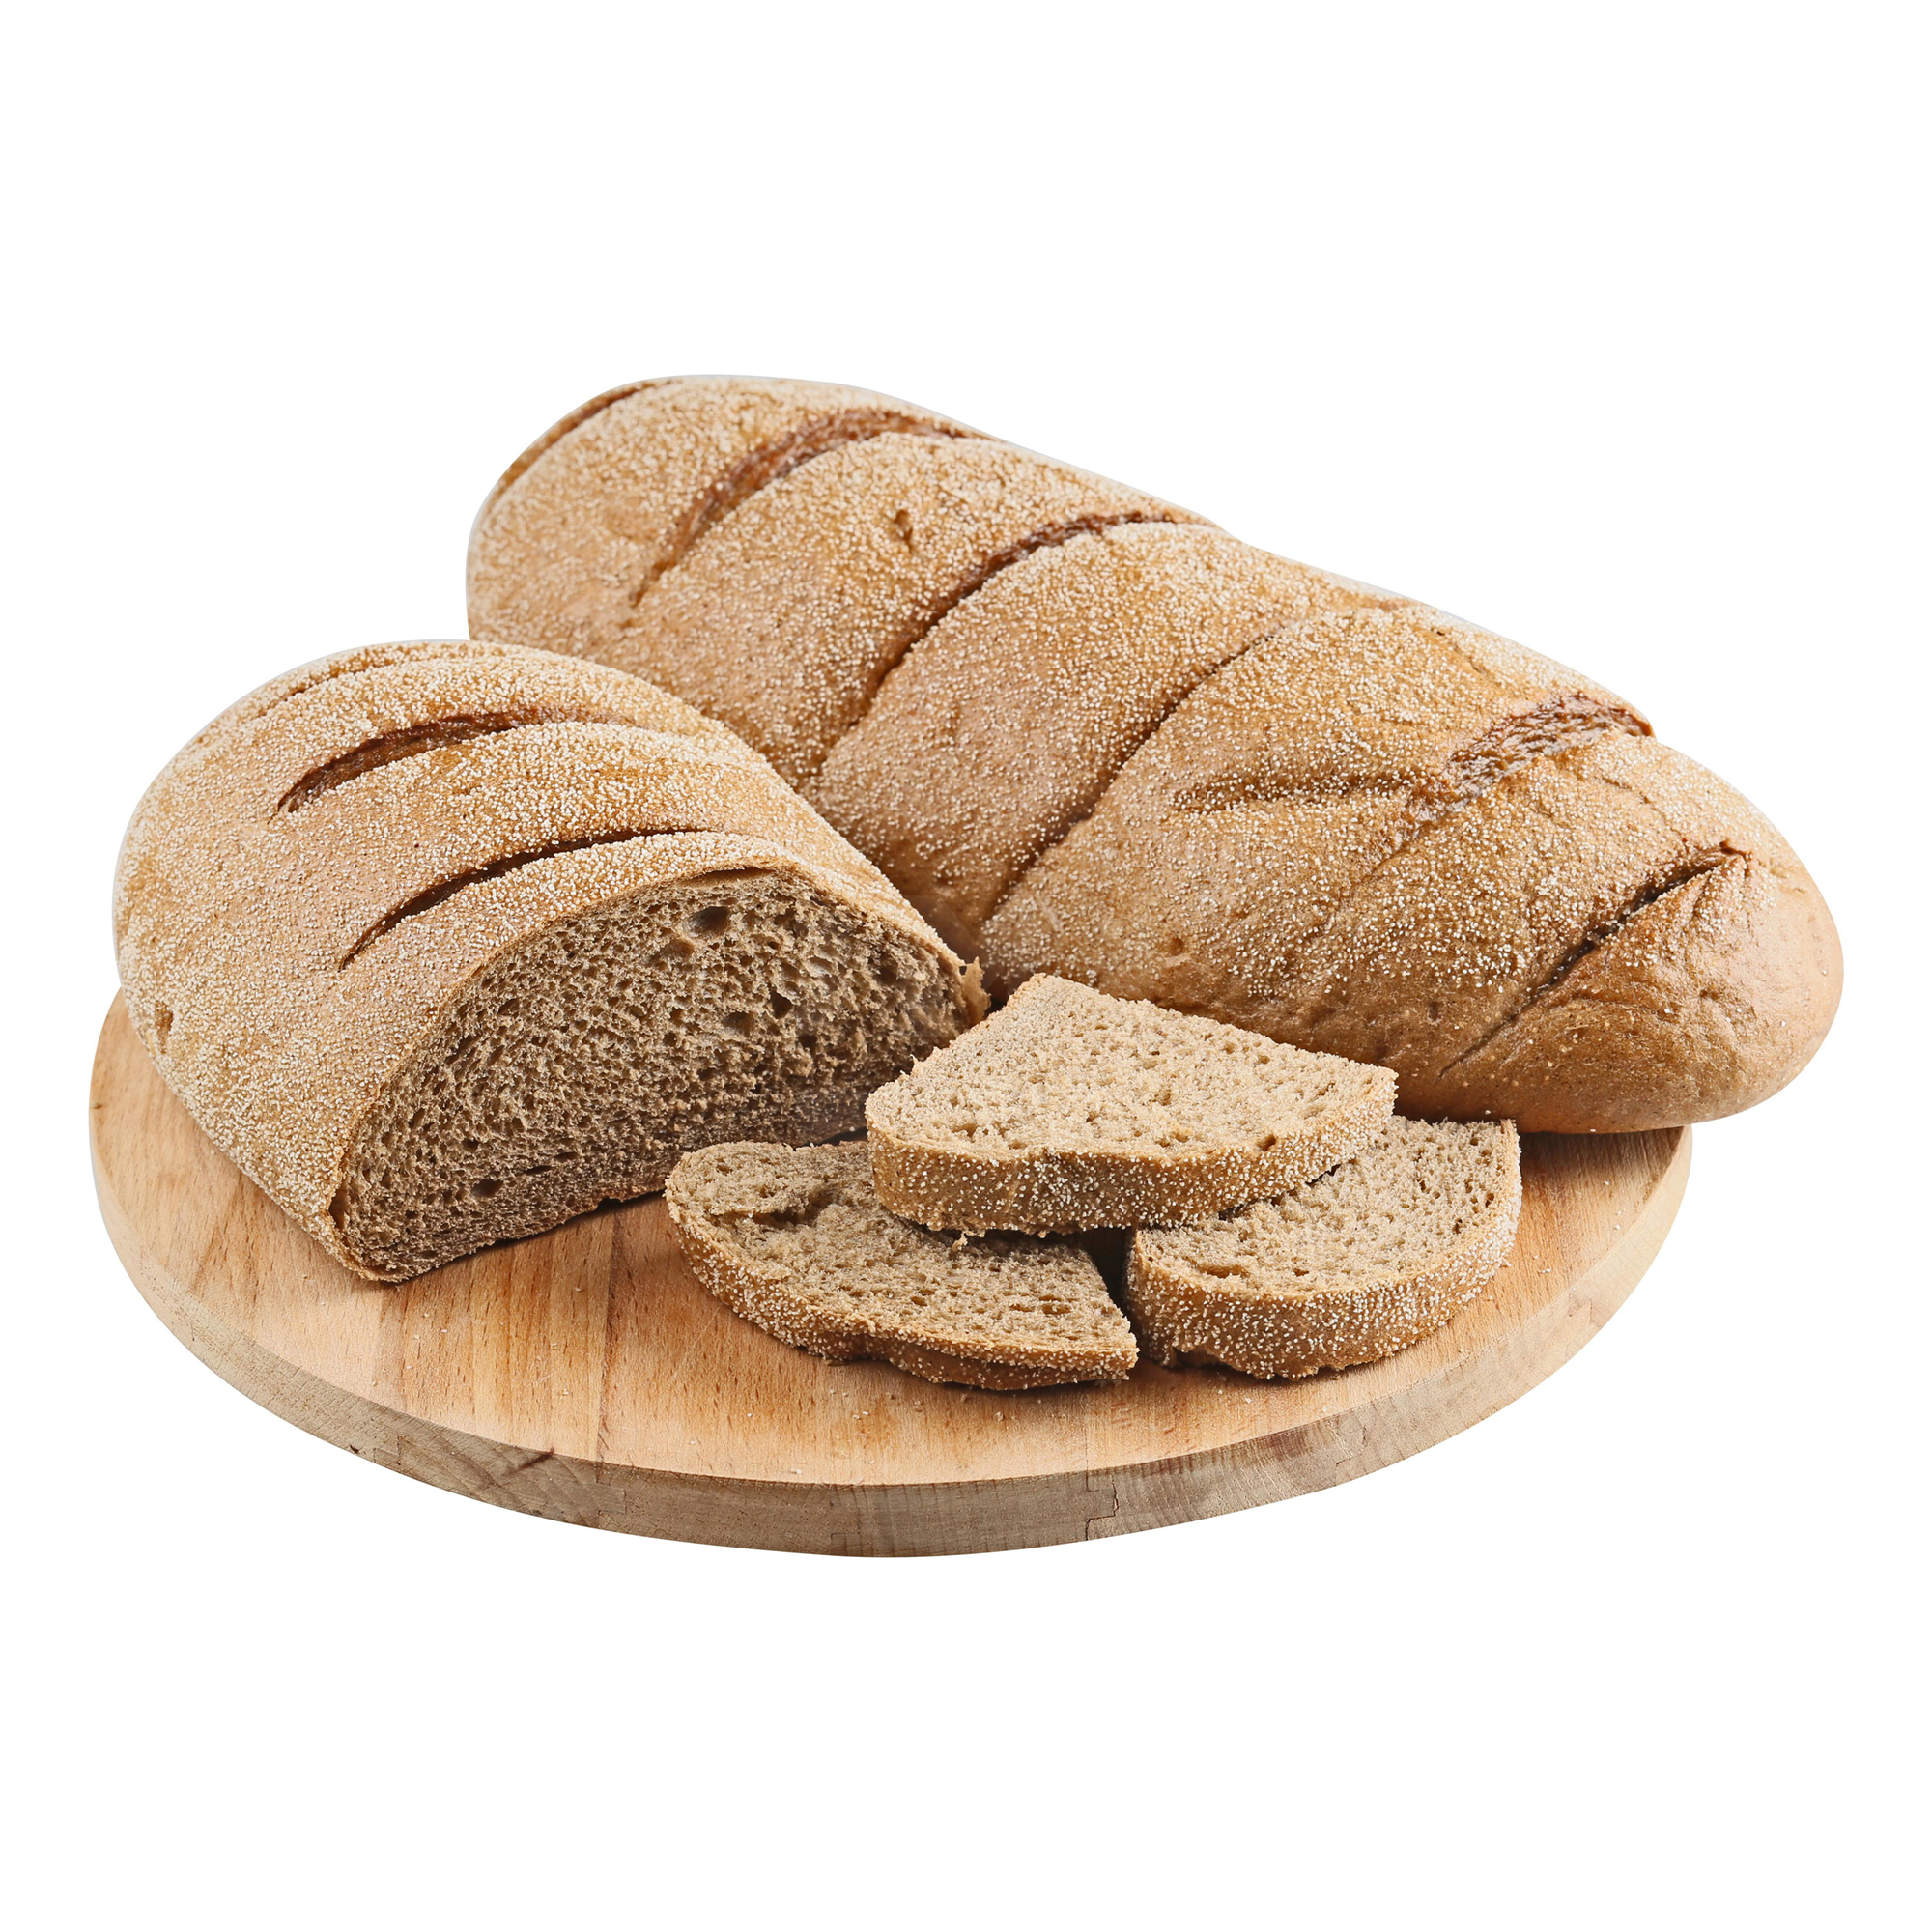 Хлеб Magnit Прибалтийский формовой пшенично-ржаной 300 г